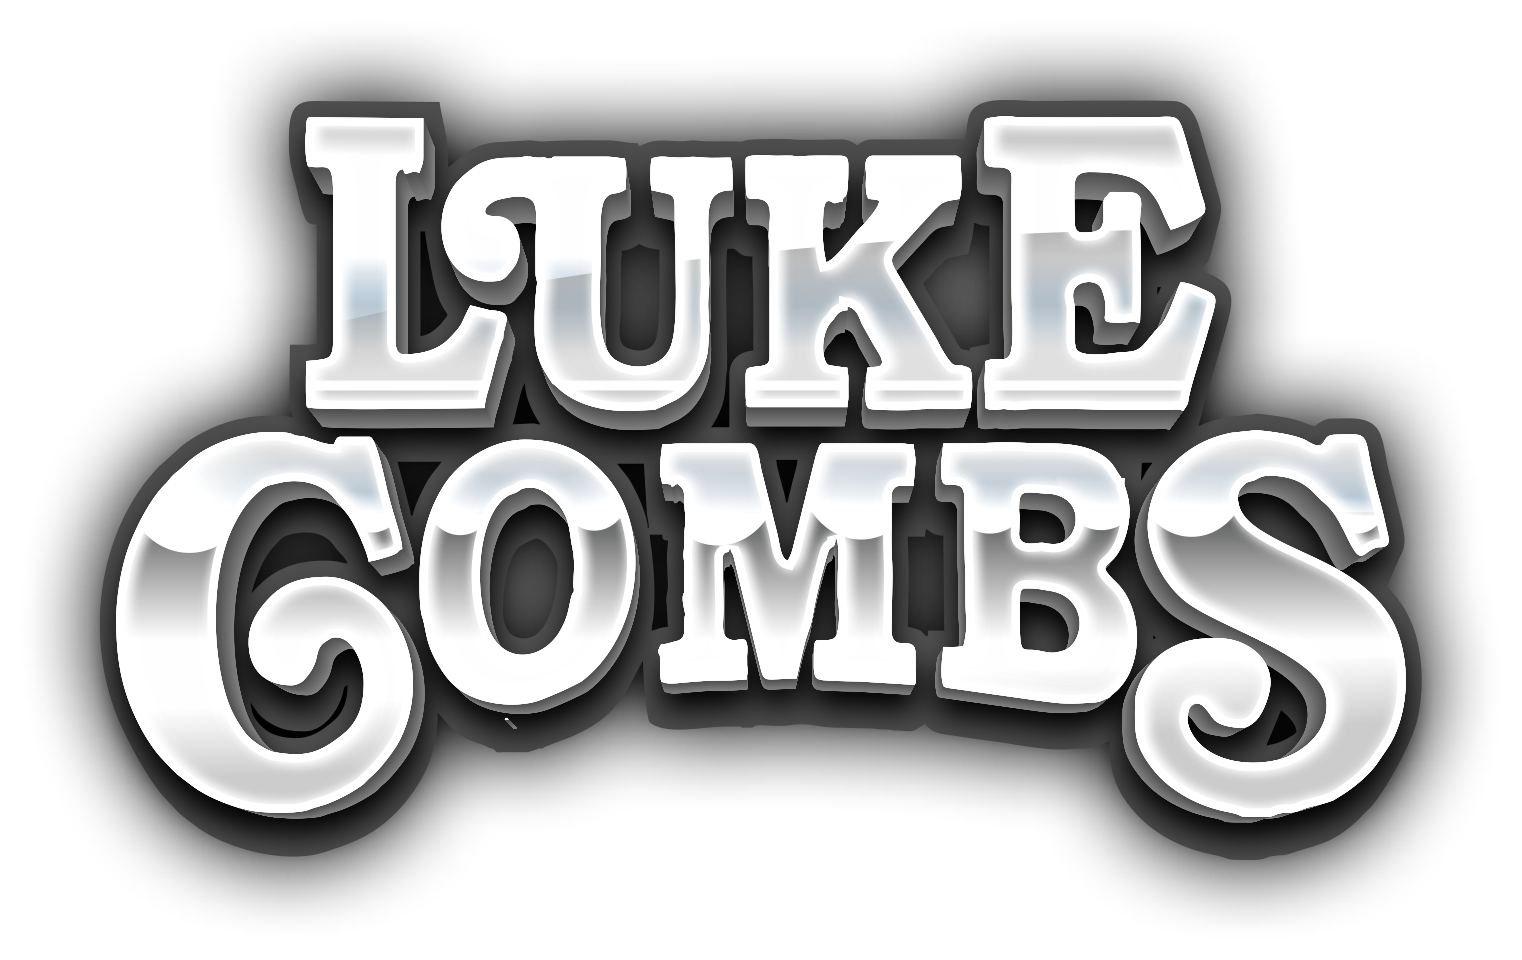  Luke Combs discount code